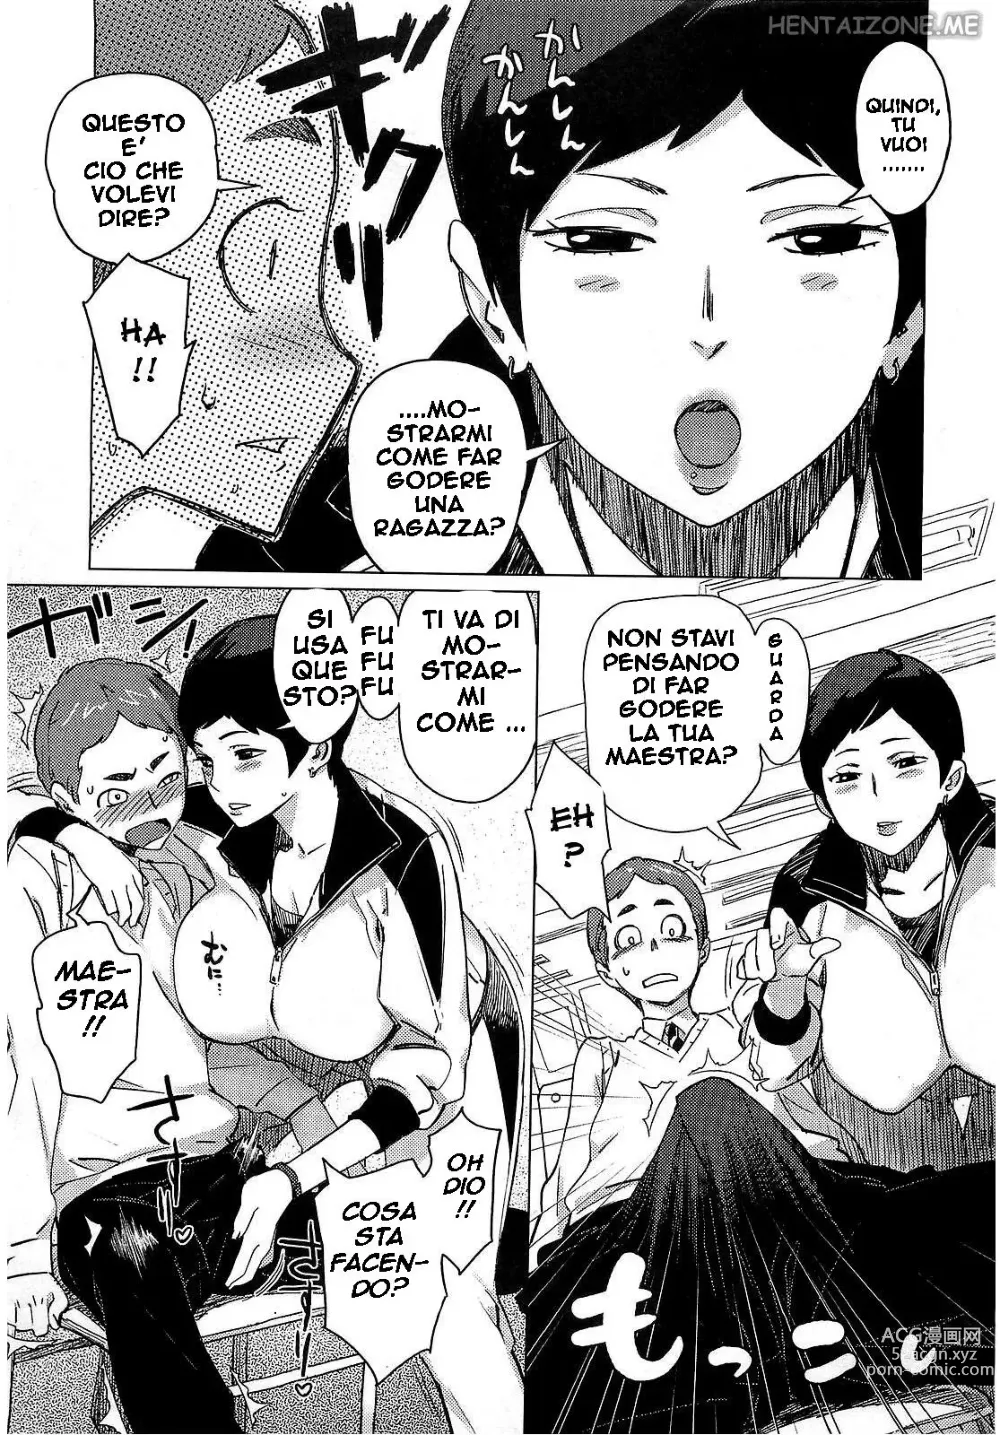 Page 5 of manga La Maestra di Educazione Sessuale (decensored)